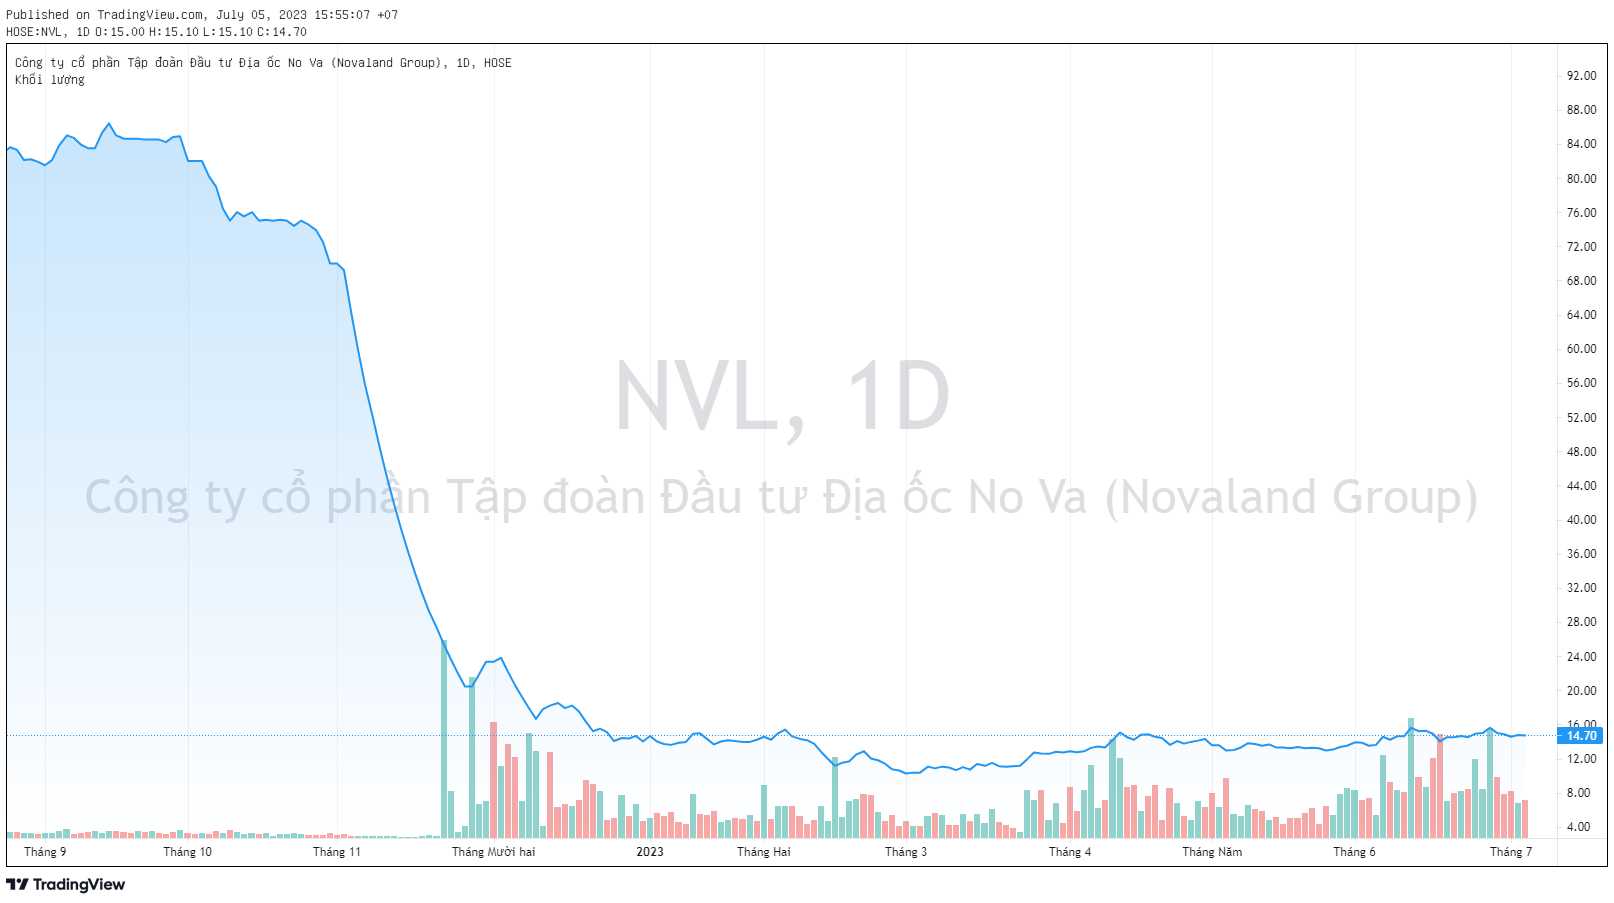 Con gái Chủ tịch Novaland Bùi Thành Nhơn mua vào hơn 3 triệu cổ phiếu NVL - Ảnh 1.